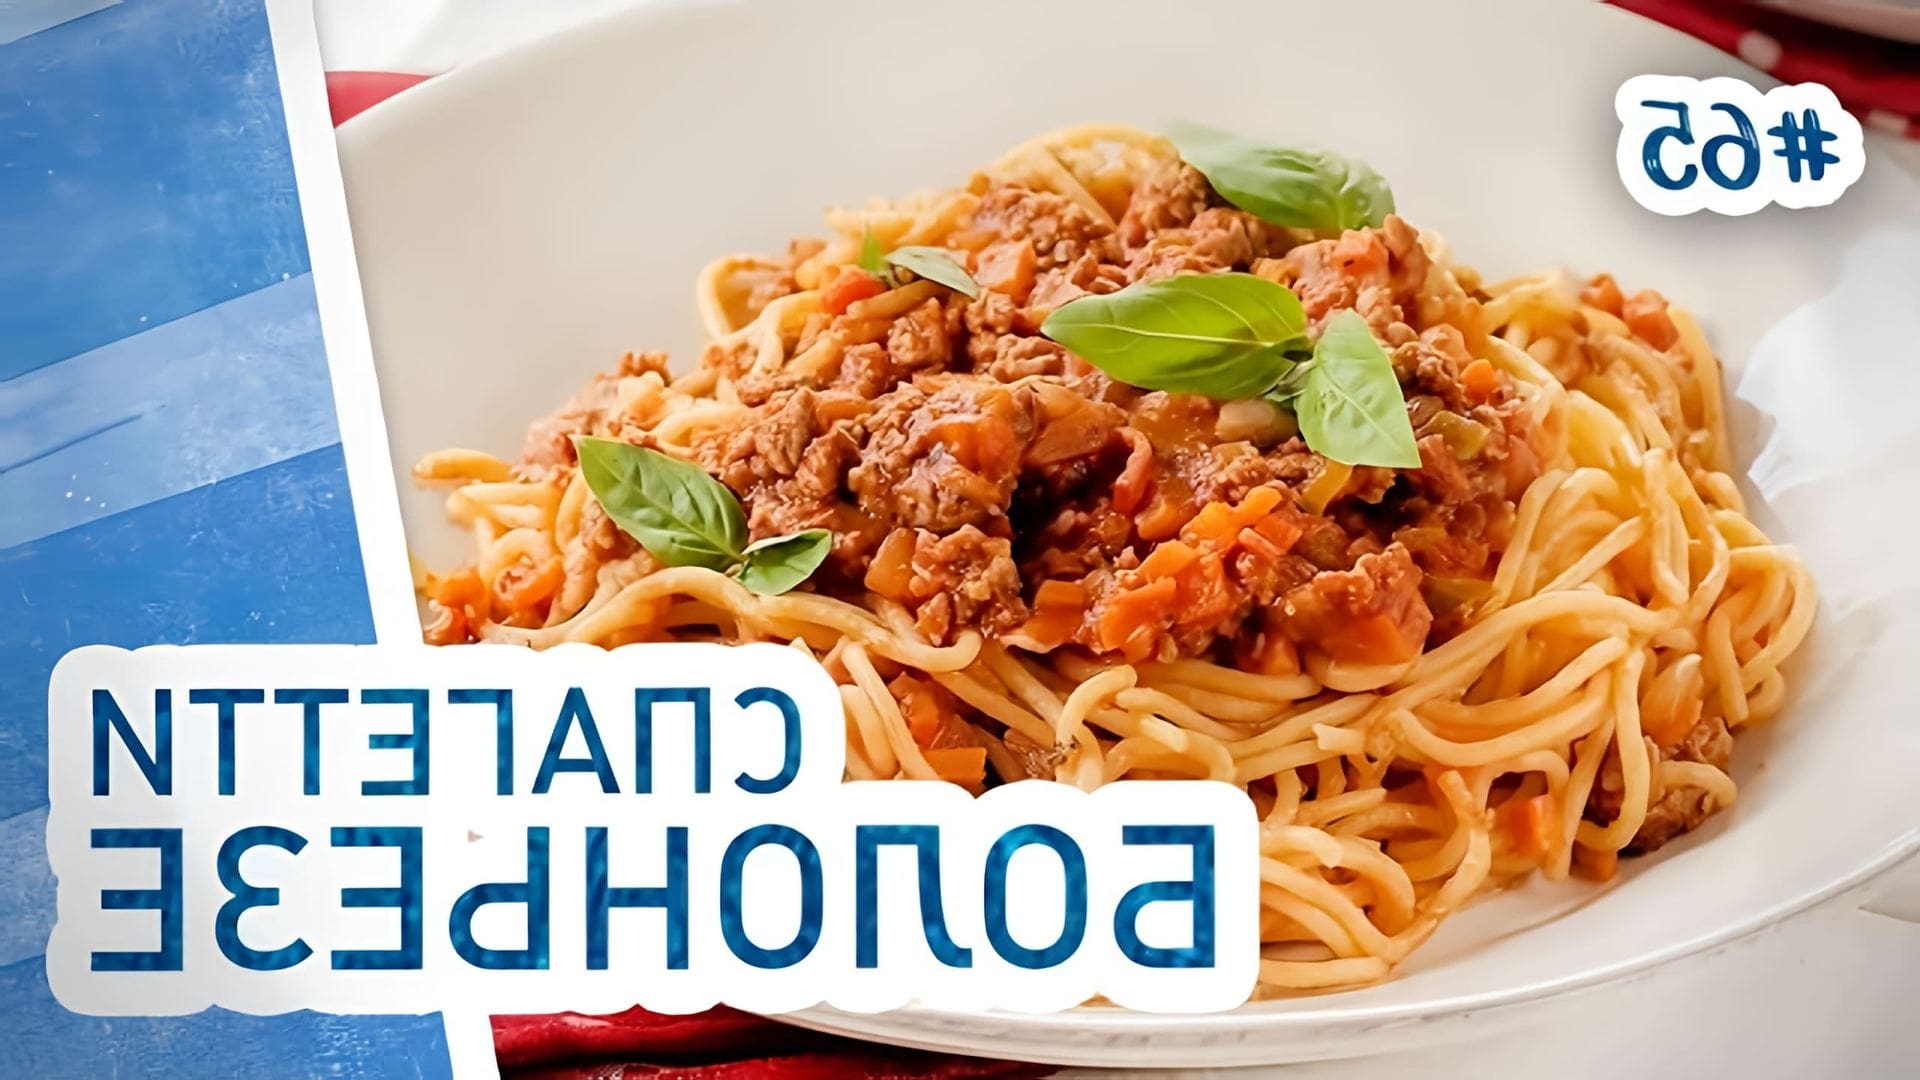 В этом видео демонстрируется процесс приготовления спагетти болоньезе с фаршем и томатами